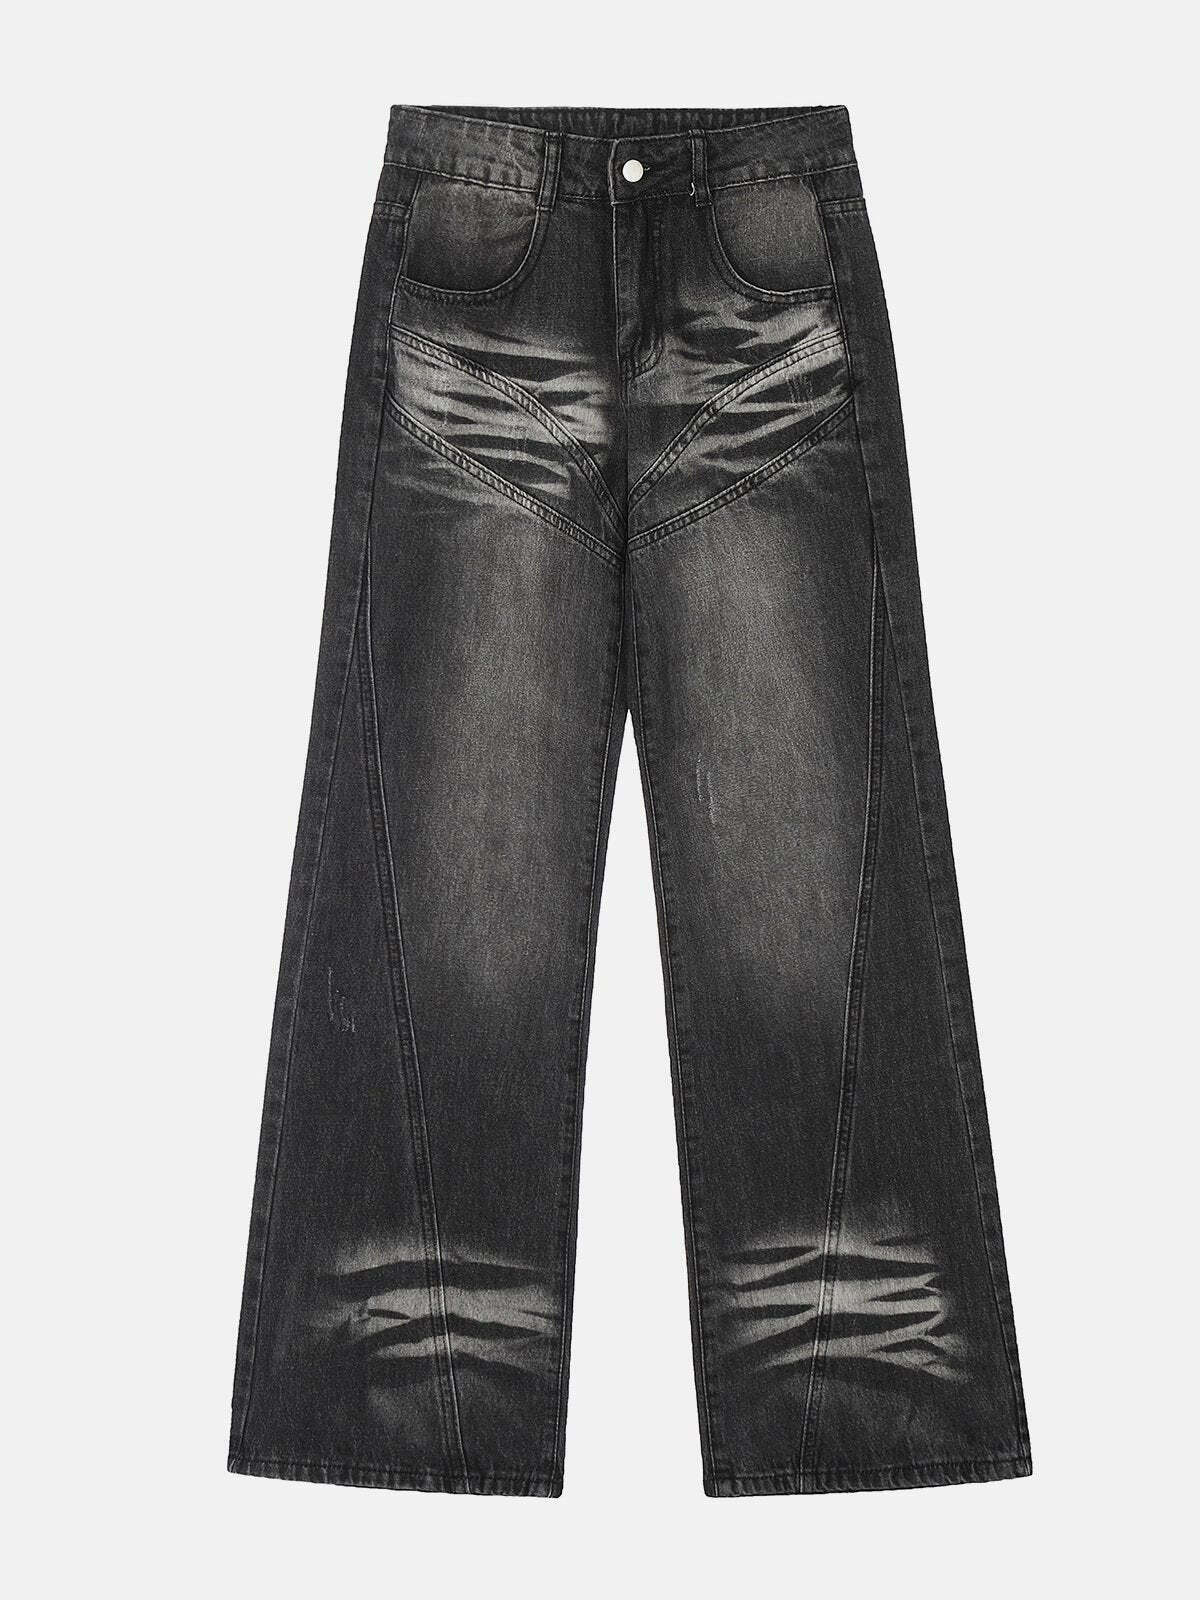 retro patchwork jeans vintage & edgy denim 4156